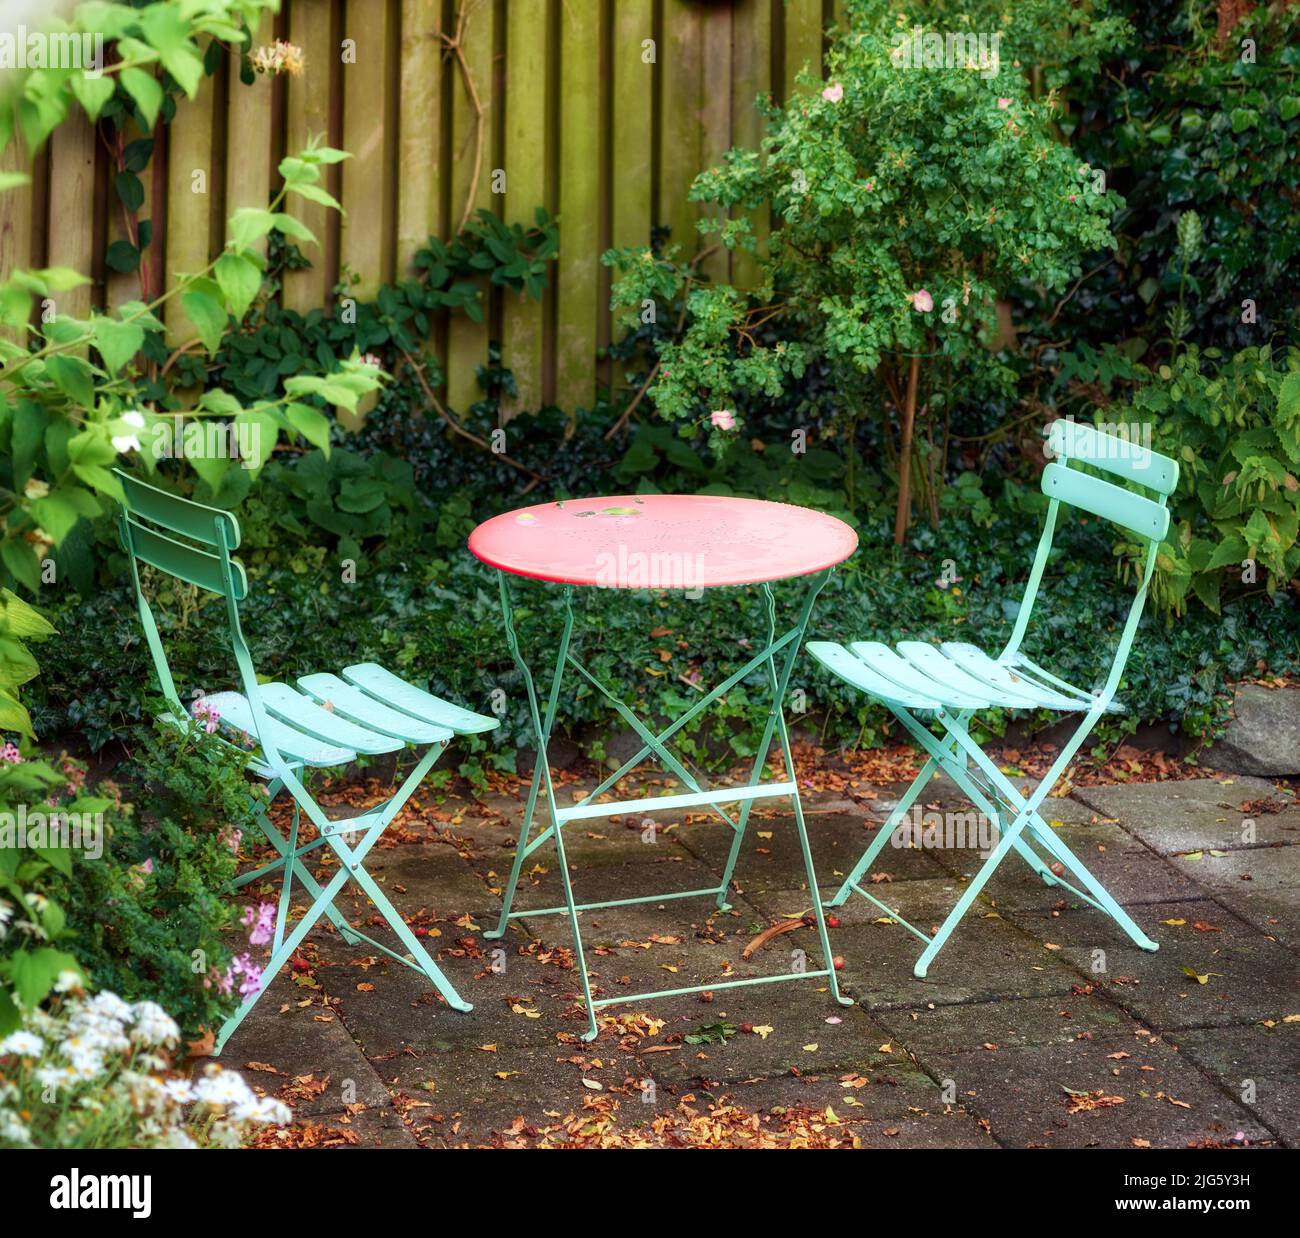 Sillas y mesa de metal con plantas en flor en un parque o patio privado al aire libre. Tranquilo paisaje verde exuberante y relajante lugar en un jardín Foto de stock